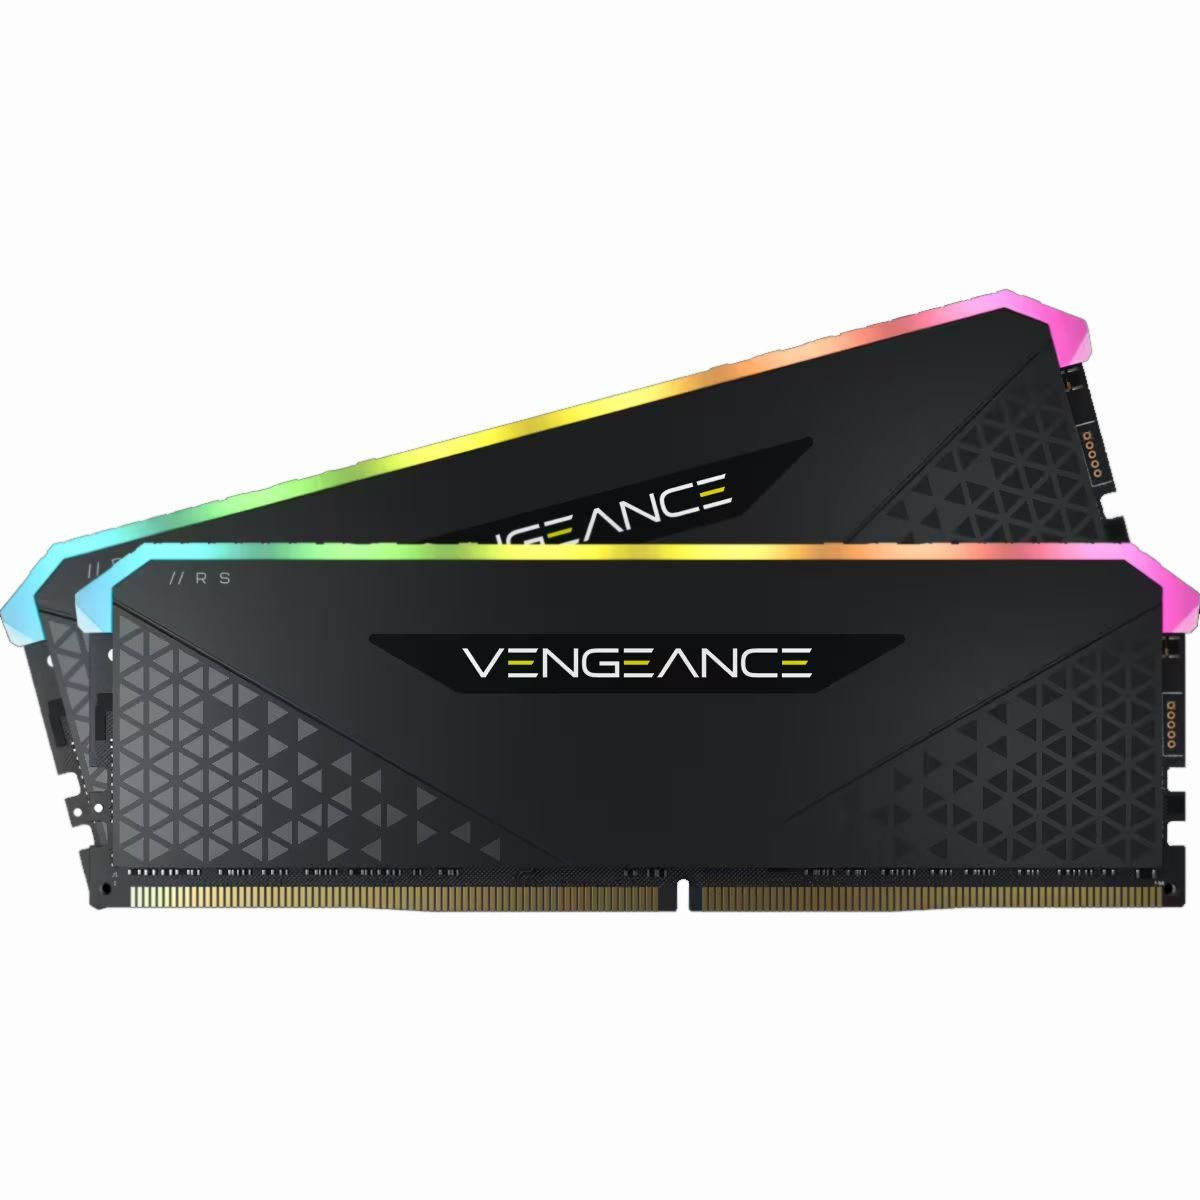 CORSAIR VENGEANCE RGB RS 3600 Mhz. Компактные модули памяти DDR4 для материнских плат Intel и AMD с шестью индивидуально настраиваемыми RGB-светодиодами.